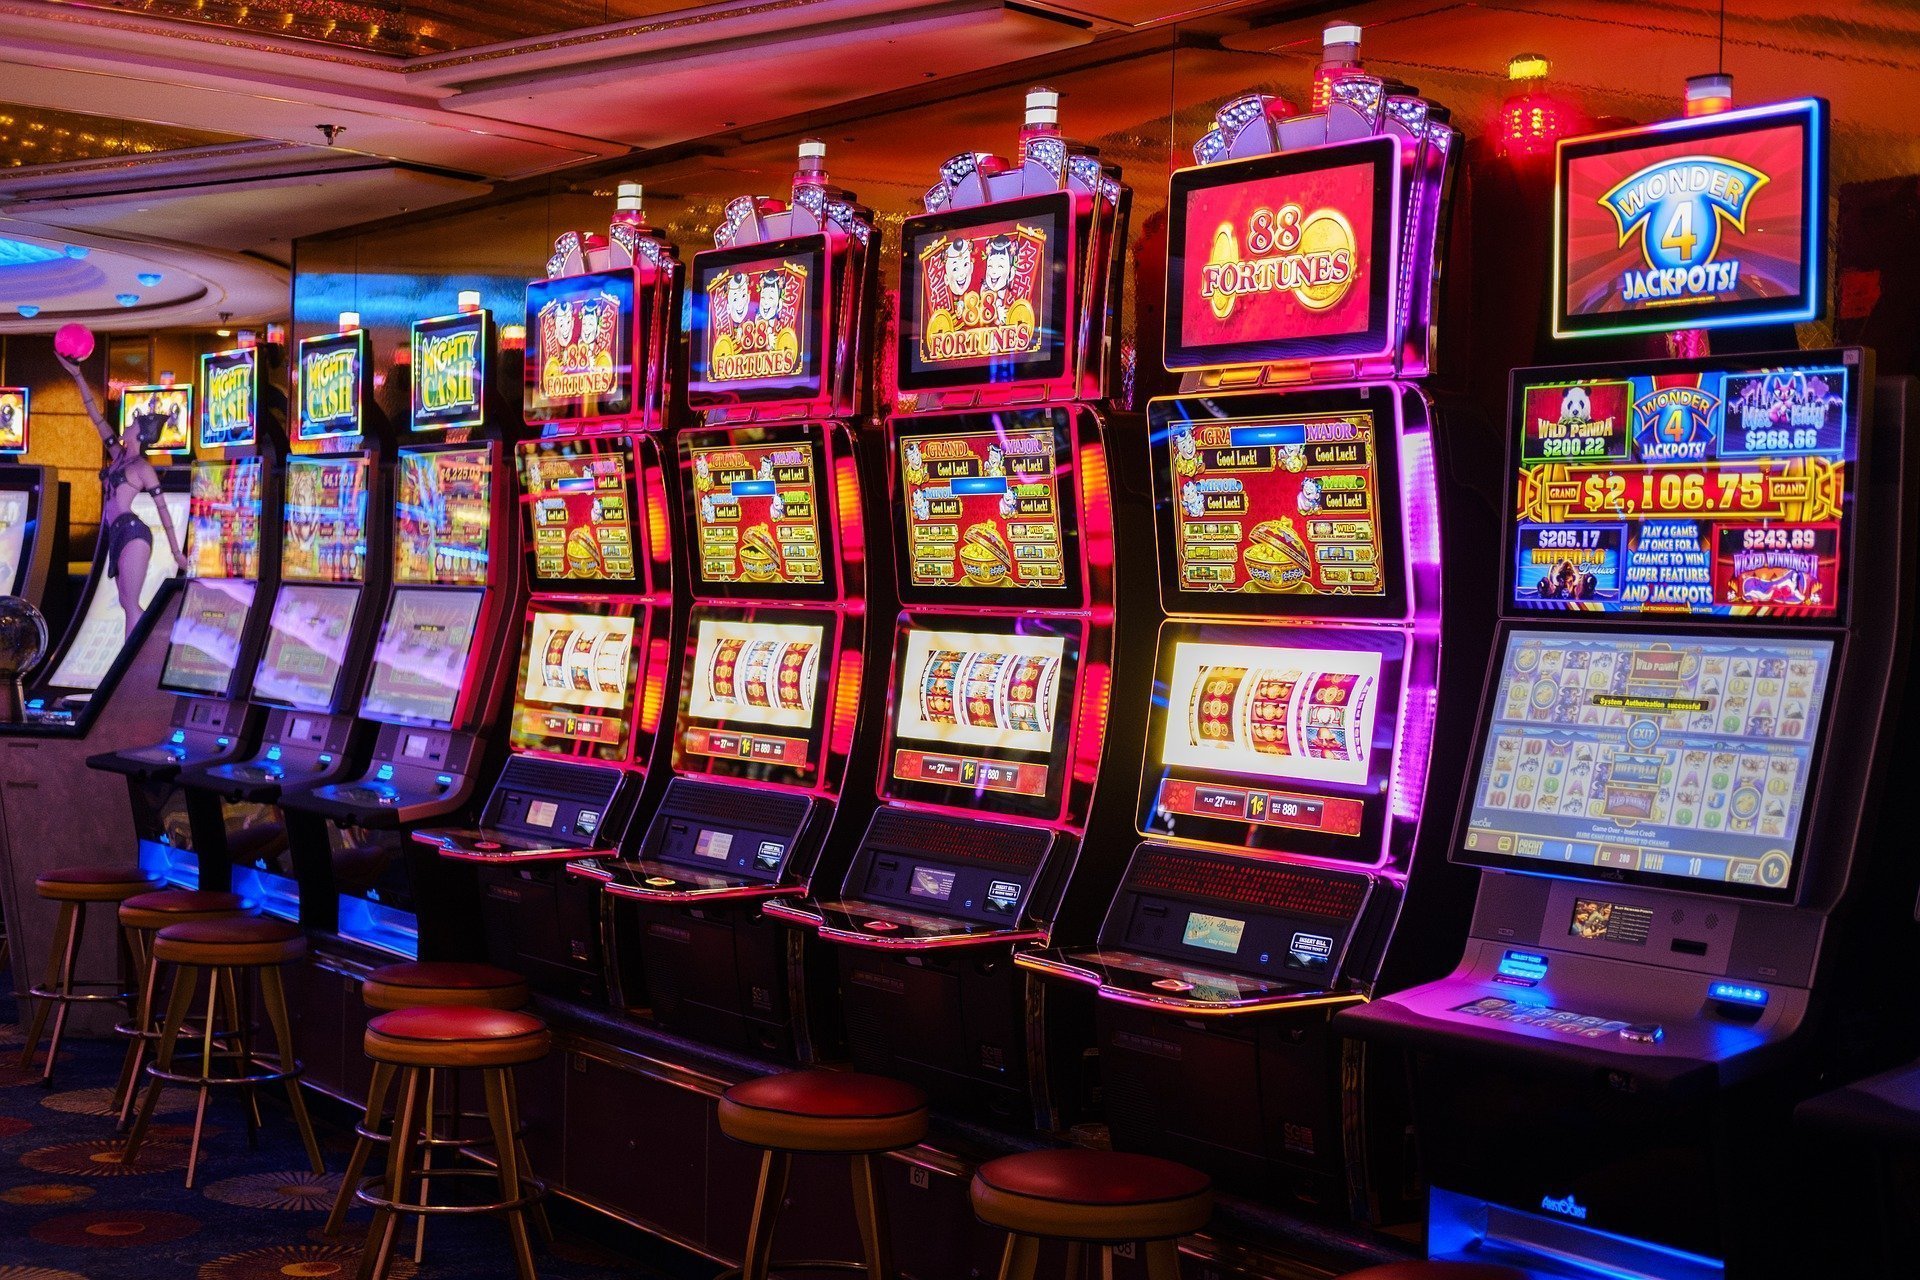  Senatul a adoptat proiectul care limitează accesul la jocurile de noroc